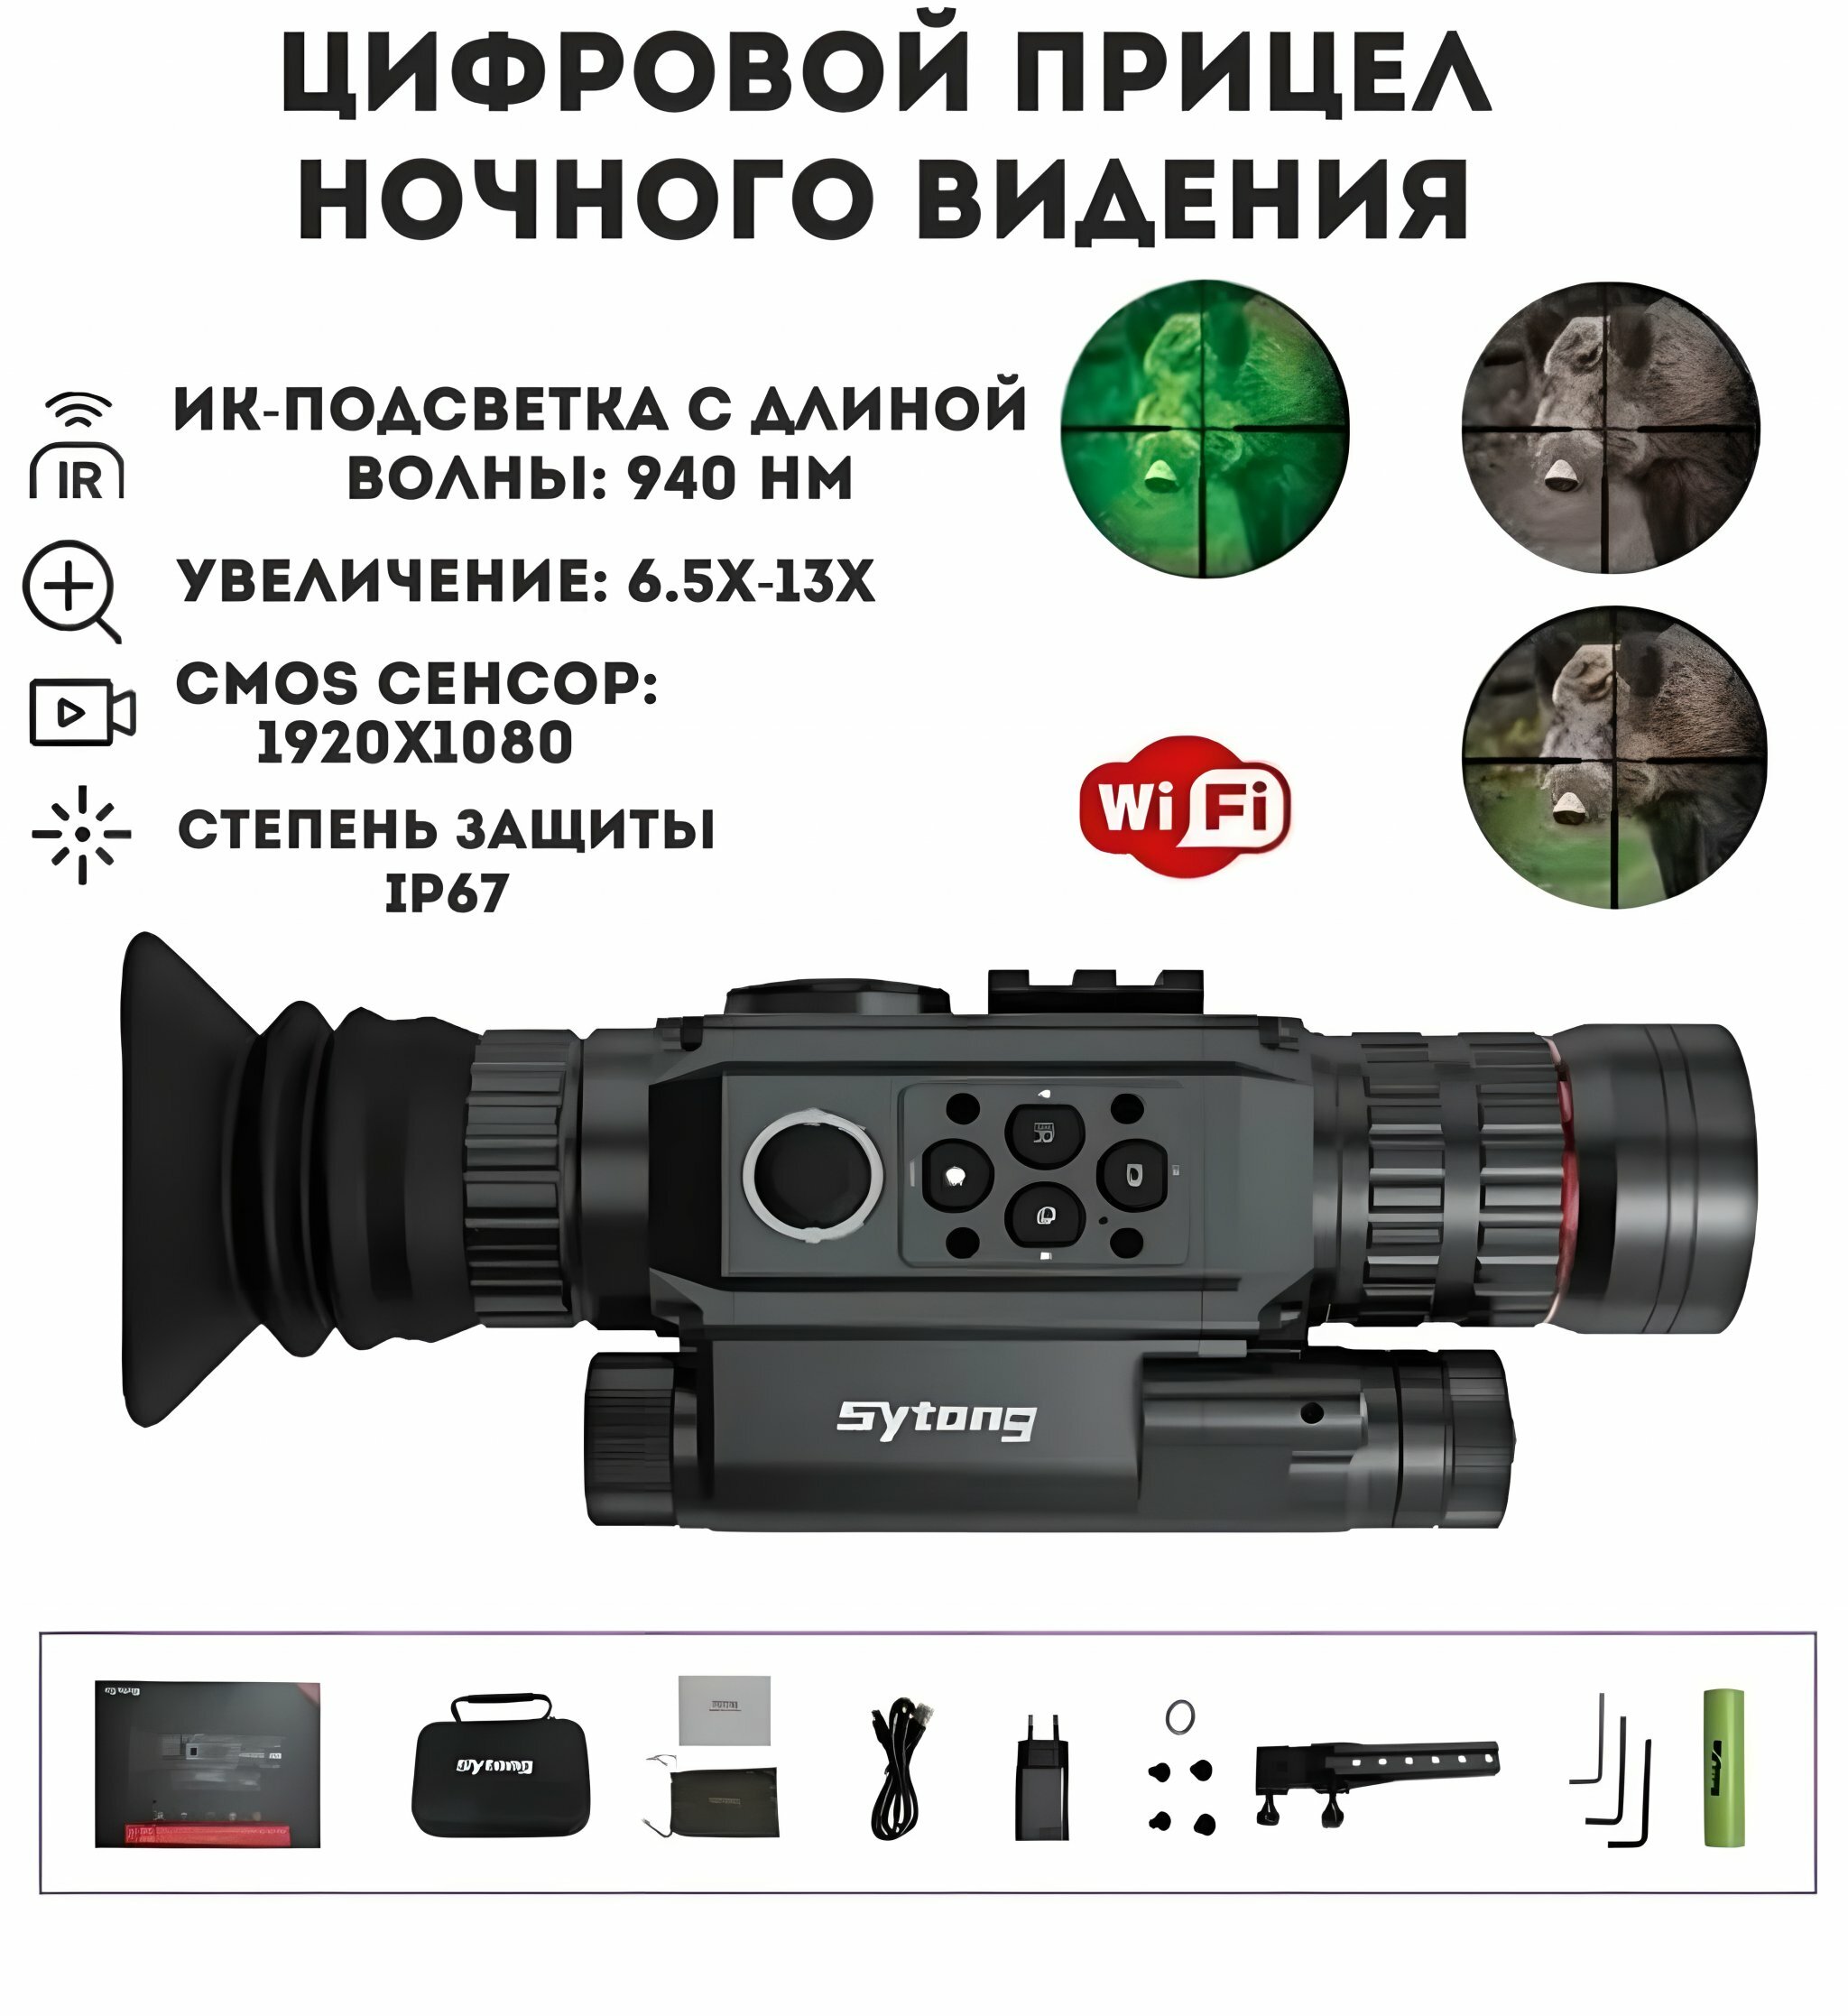 Цифровой прицел ночного видения Sytong HT-60 6.5Х-13Х для охоты